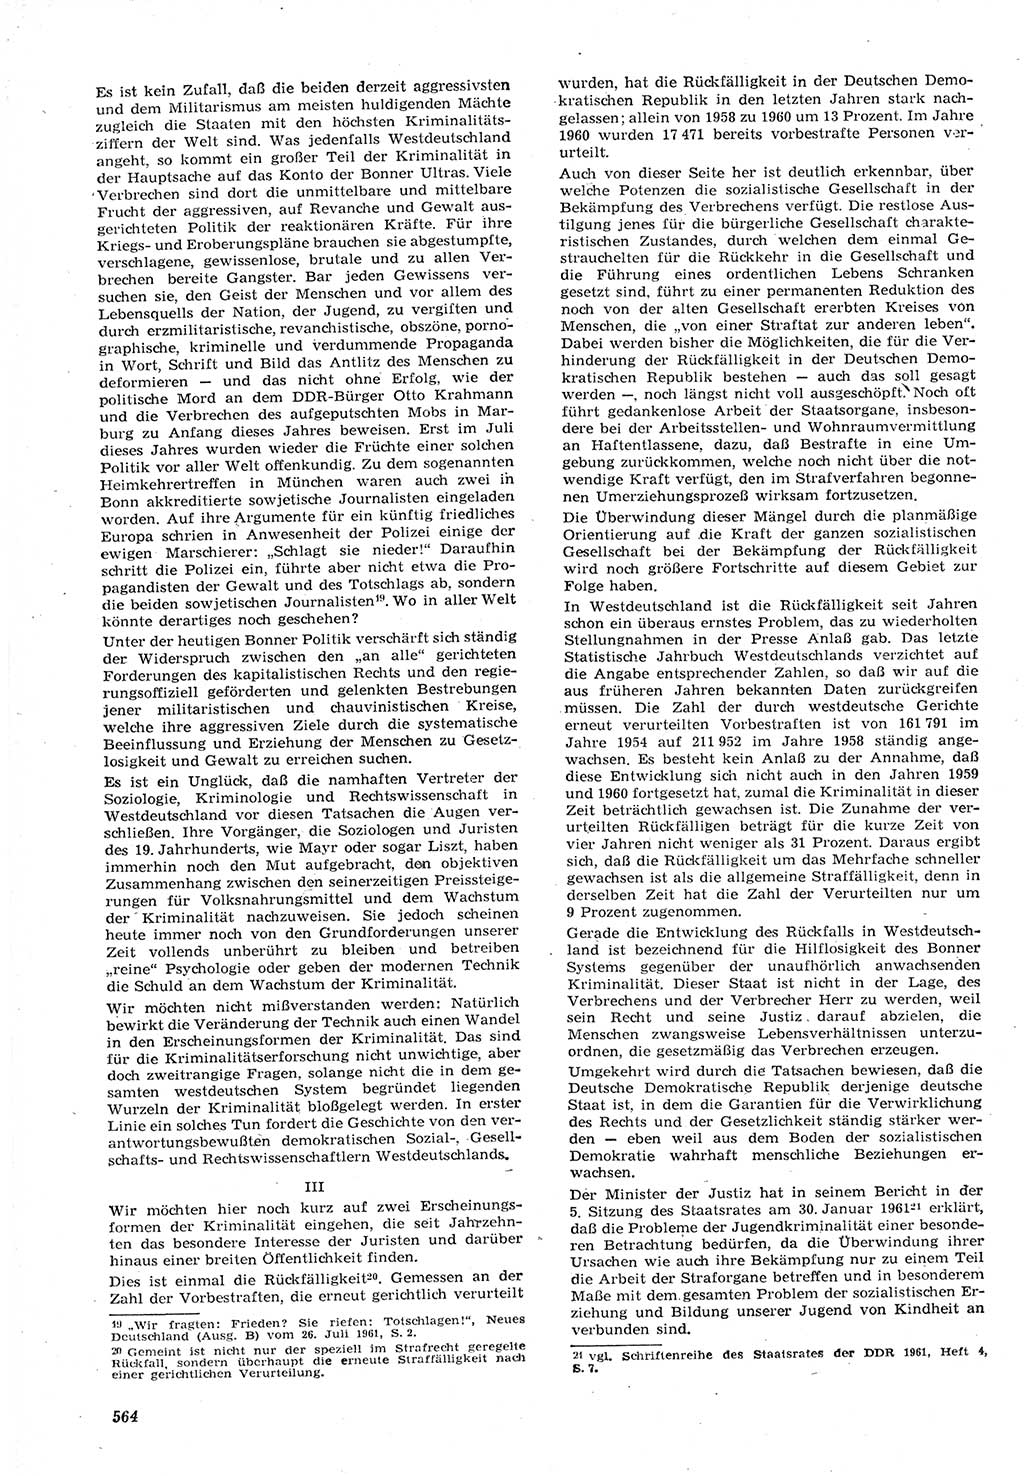 Neue Justiz (NJ), Zeitschrift für Recht und Rechtswissenschaft [Deutsche Demokratische Republik (DDR)], 15. Jahrgang 1961, Seite 564 (NJ DDR 1961, S. 564)